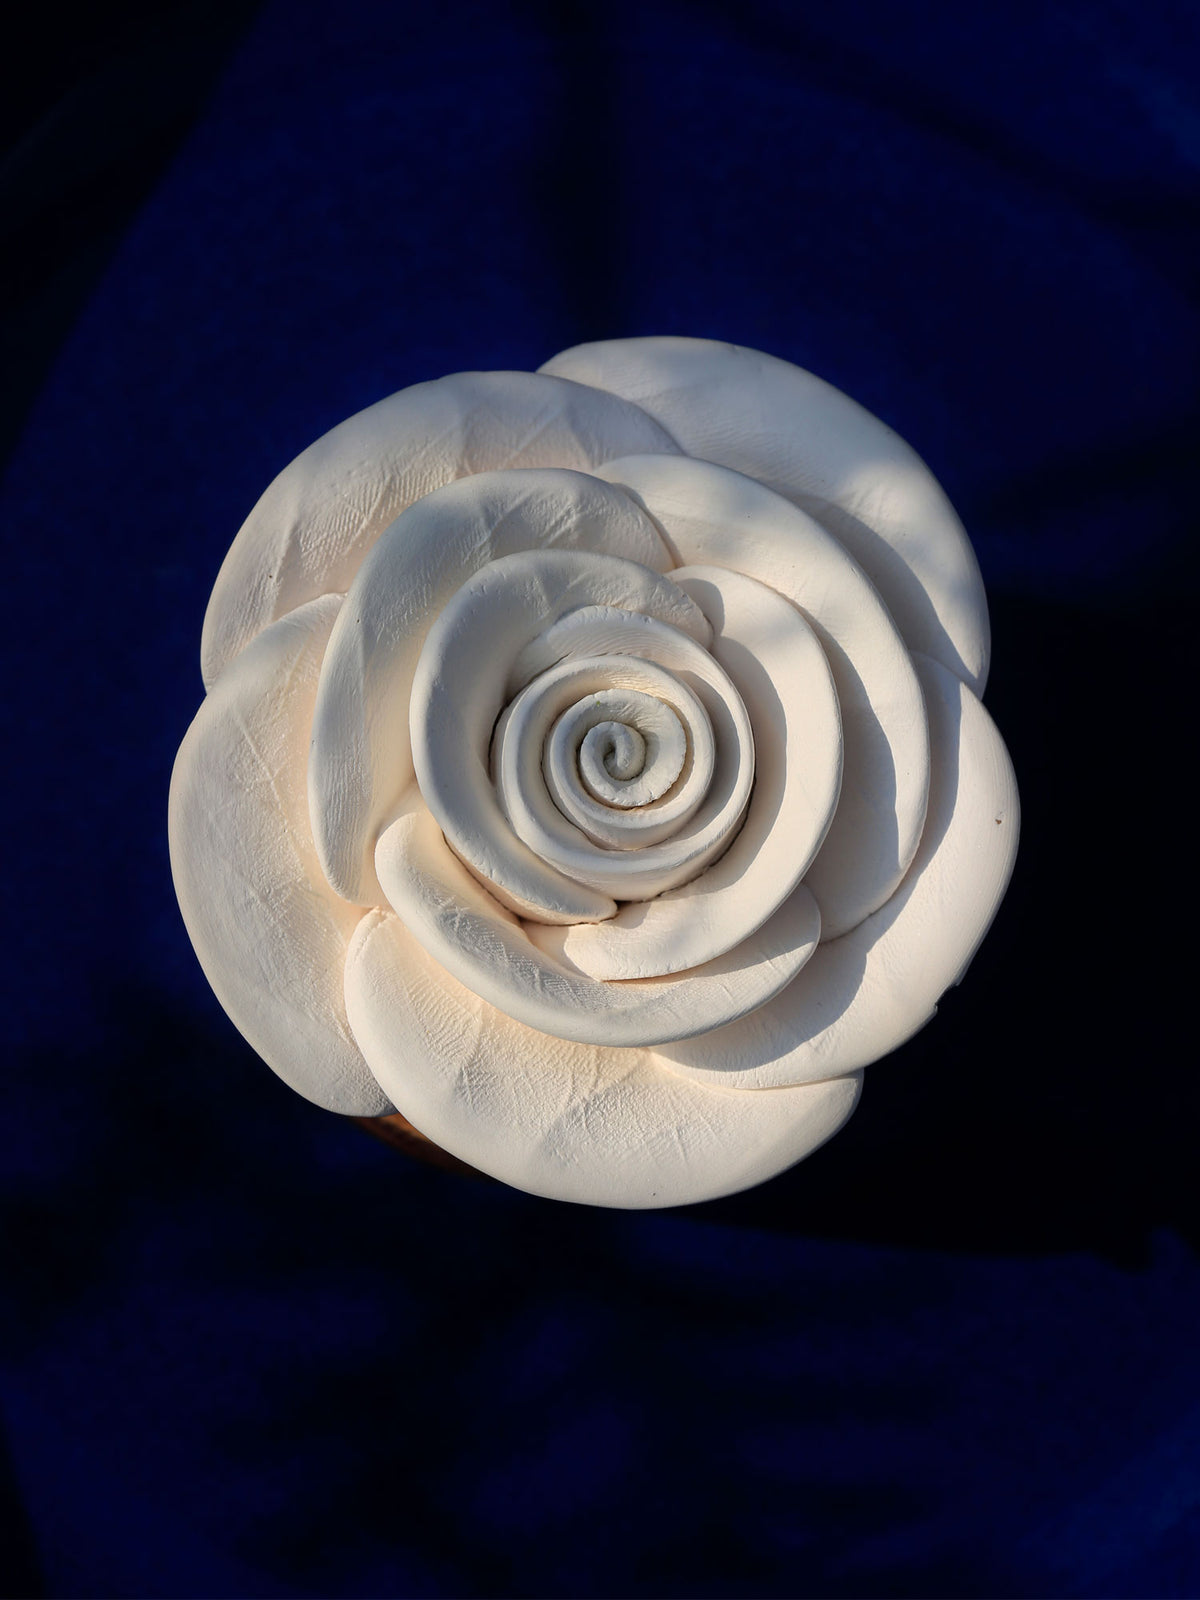 Handmade Rose Ceramic and Wood Diffuser